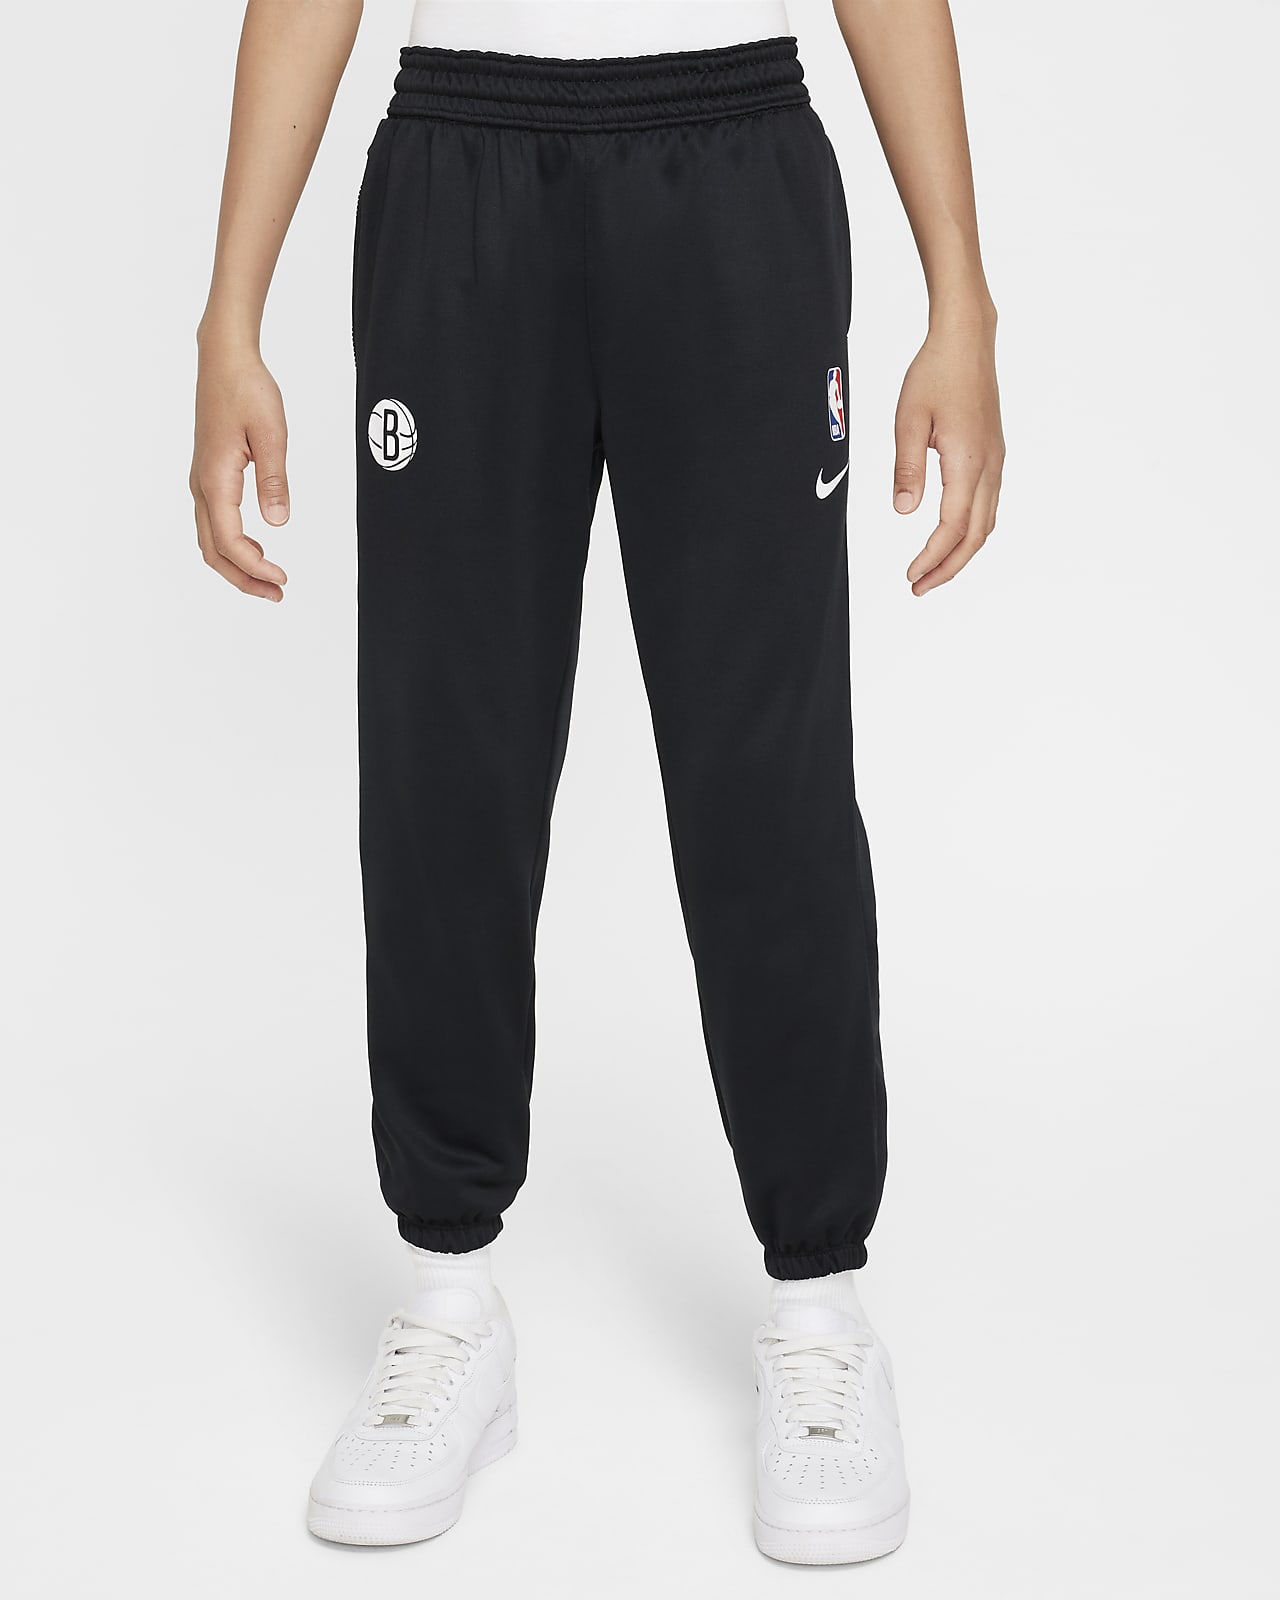 Brooklyn Nets Spotlight Older Kids' Nike Dri-FIT NBA Trousers